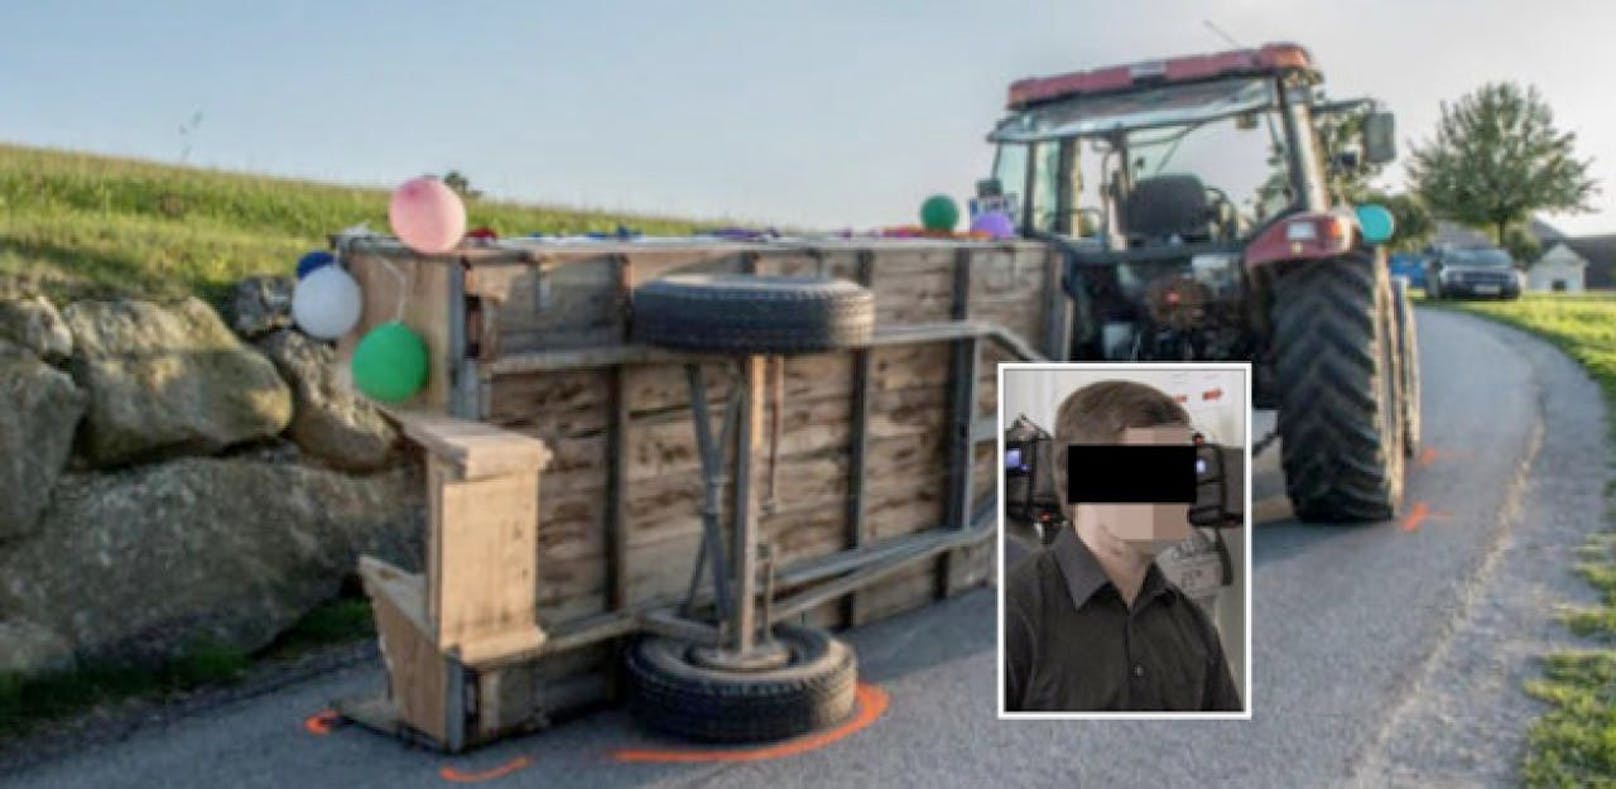 Braut stirbt bei Traktor-Unfall – Bruder verurteilt – Österreich